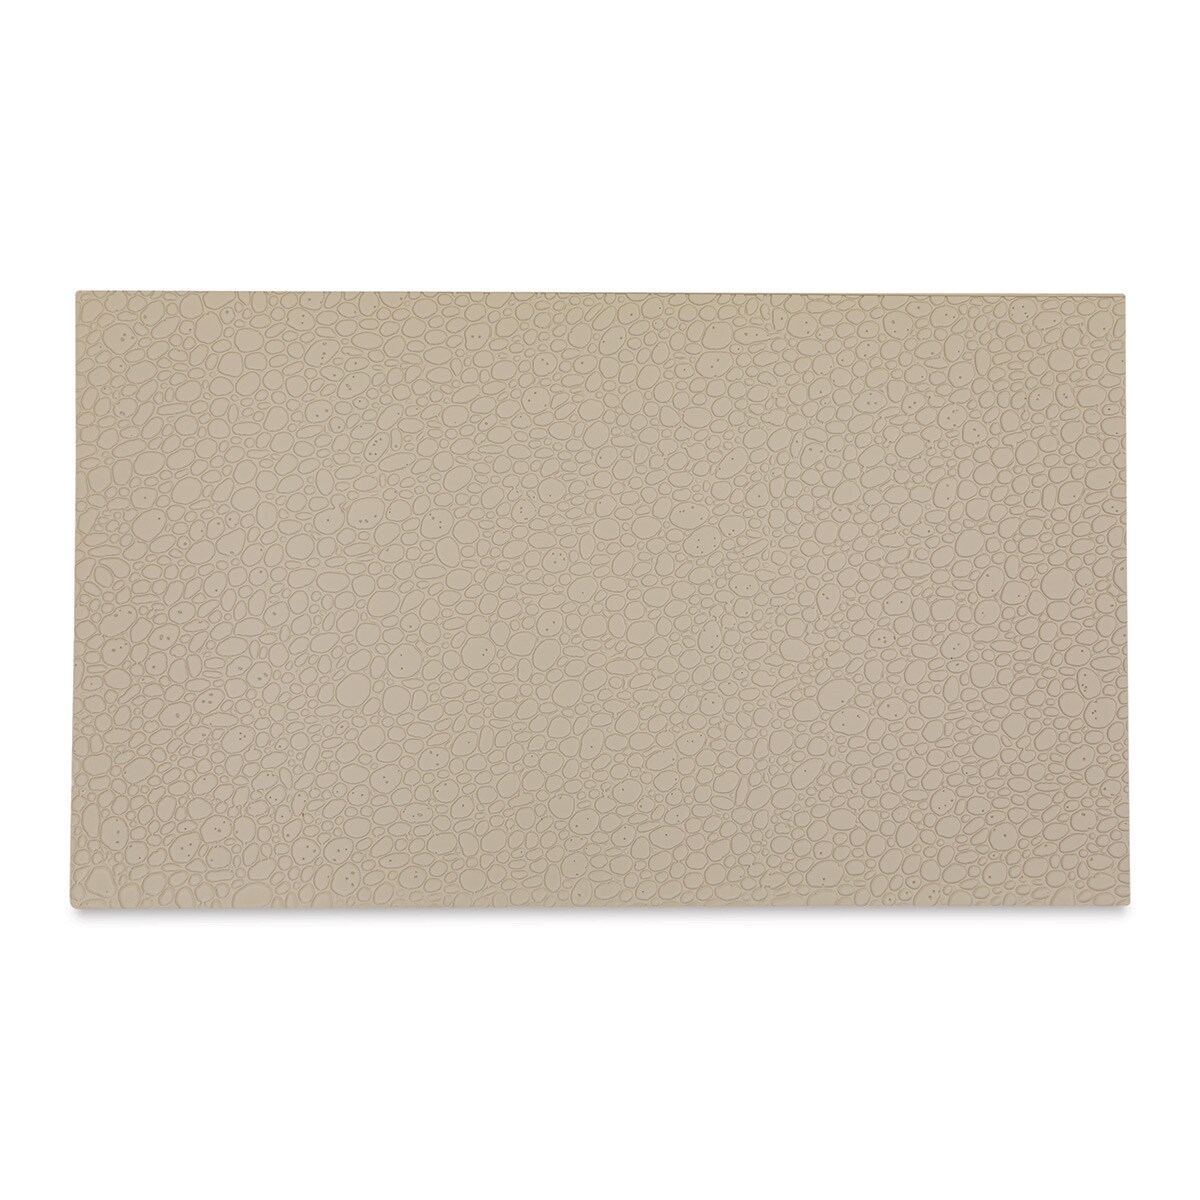 Plastruct Patterned Sheets, Random Polished Stone,&#xA0;1:24 Scale